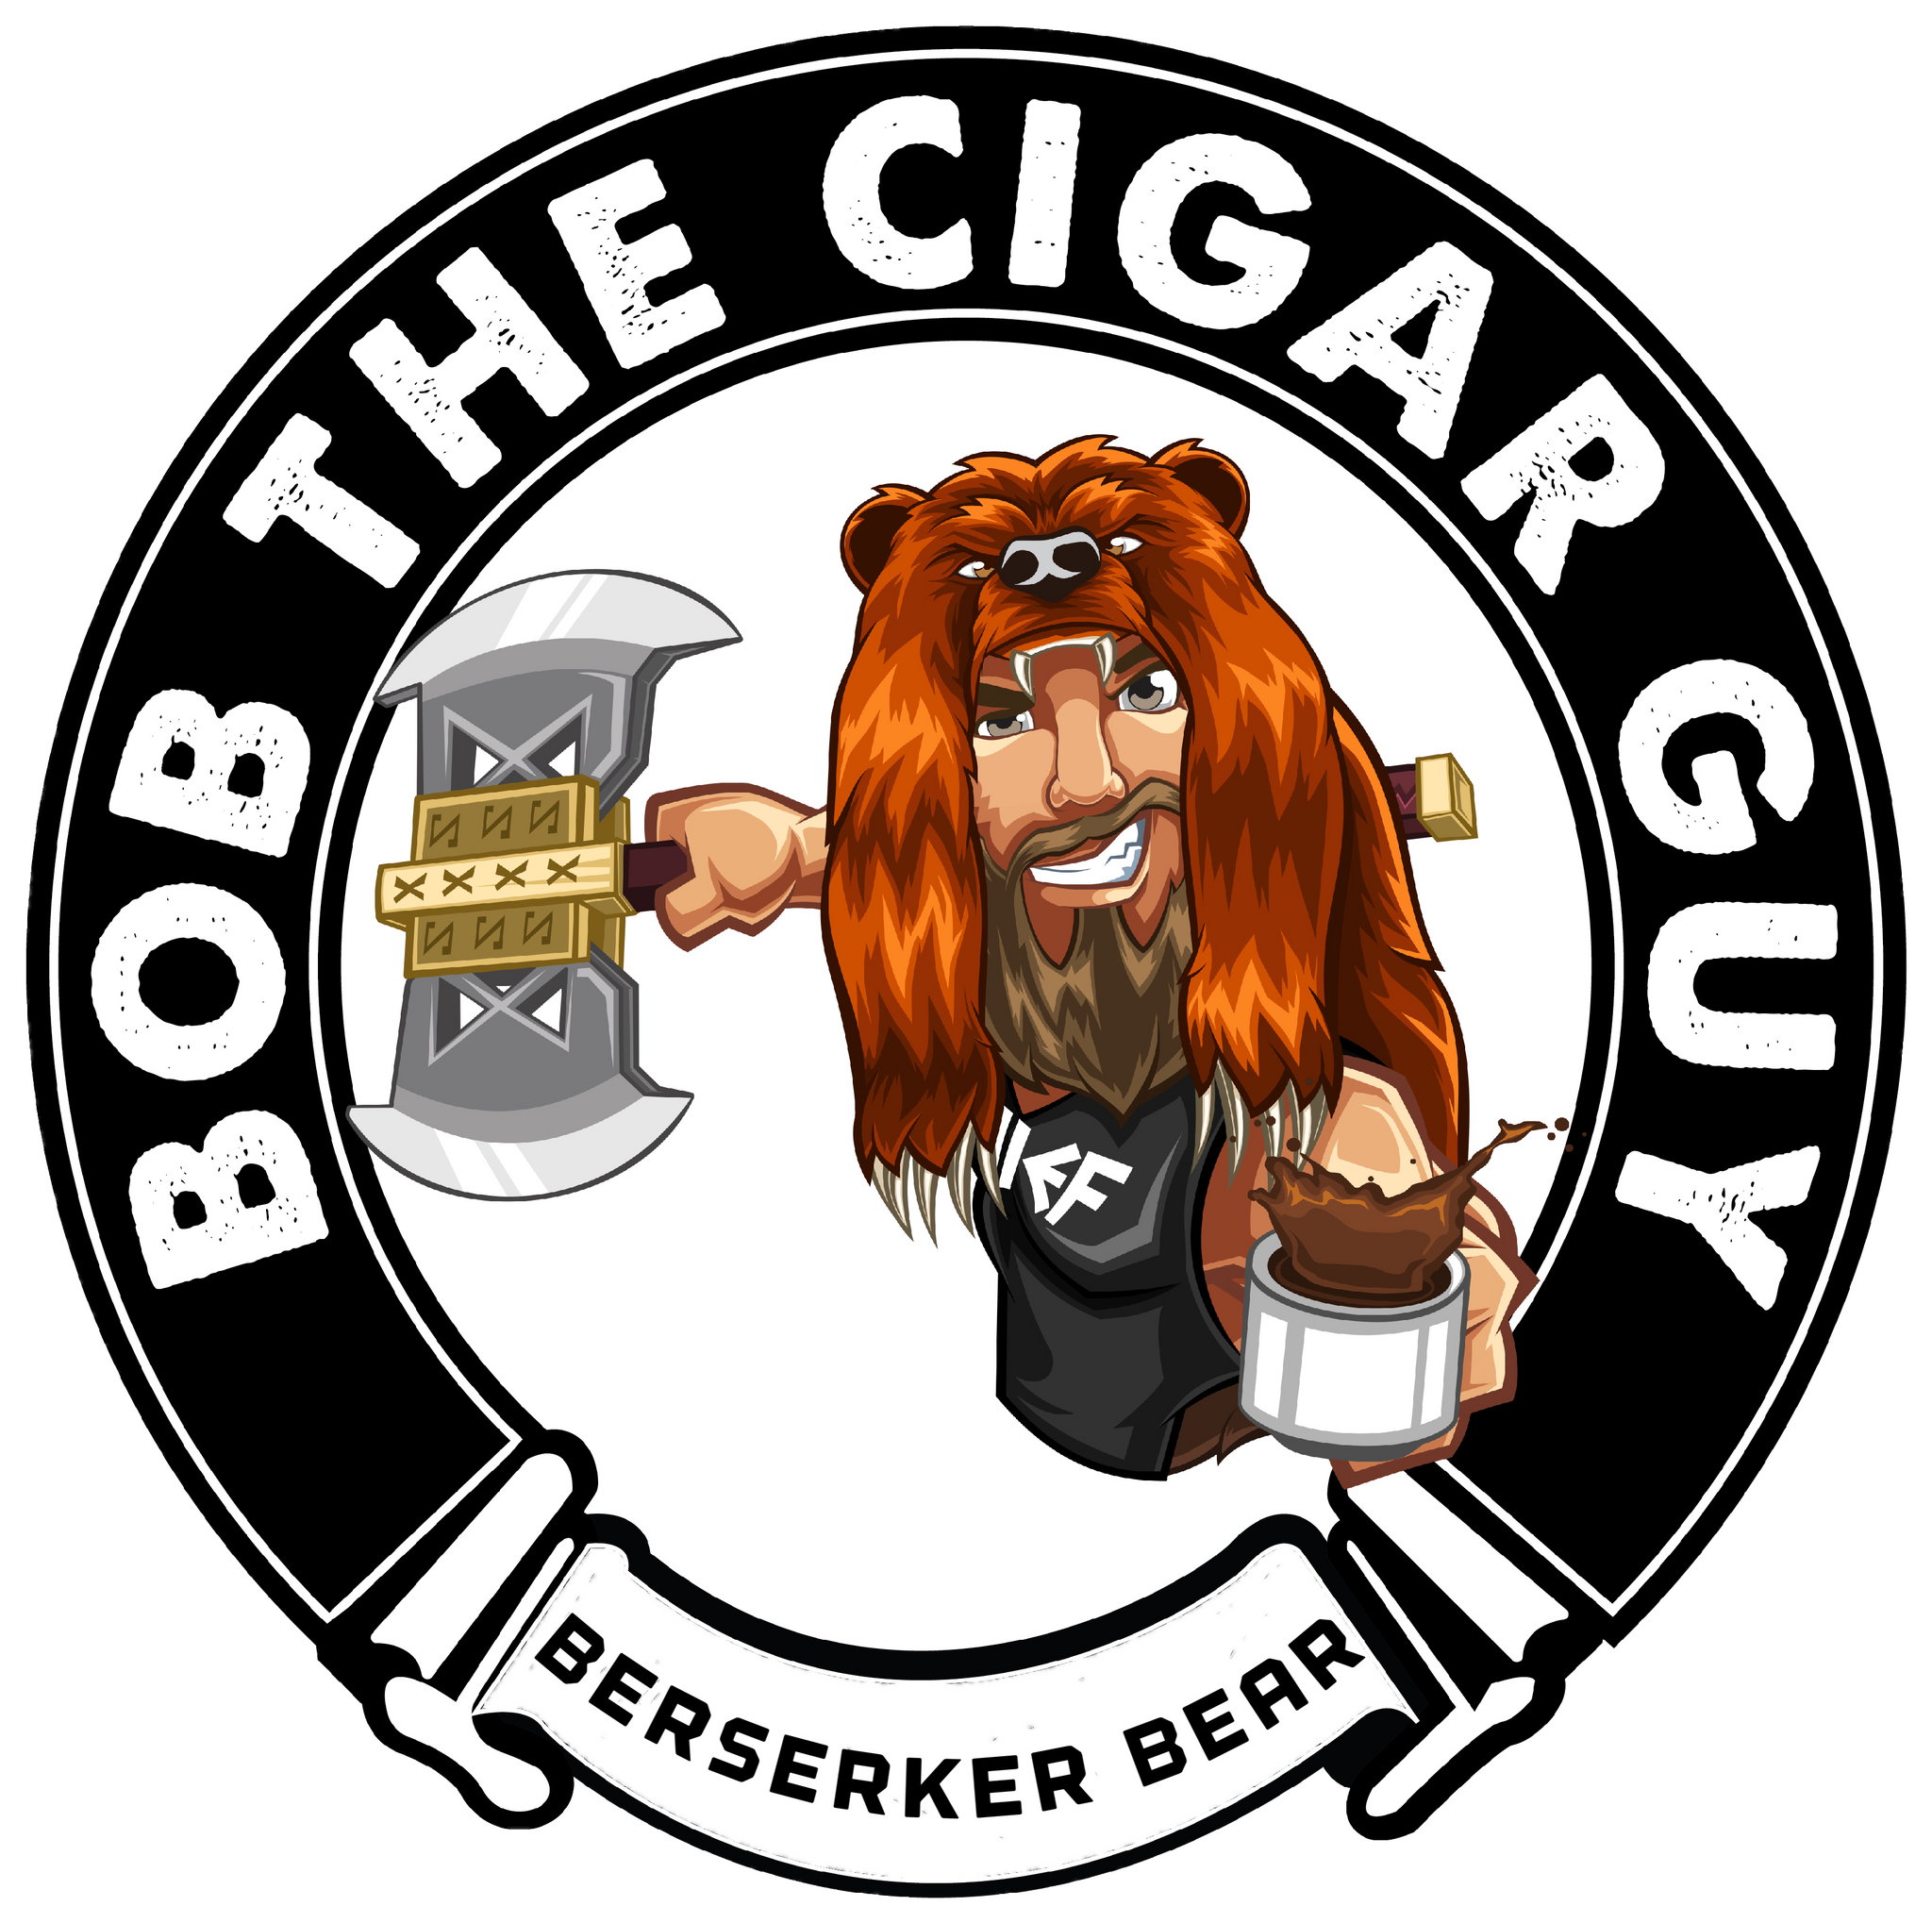 Bob the Cigar Guy - Berserker Bear